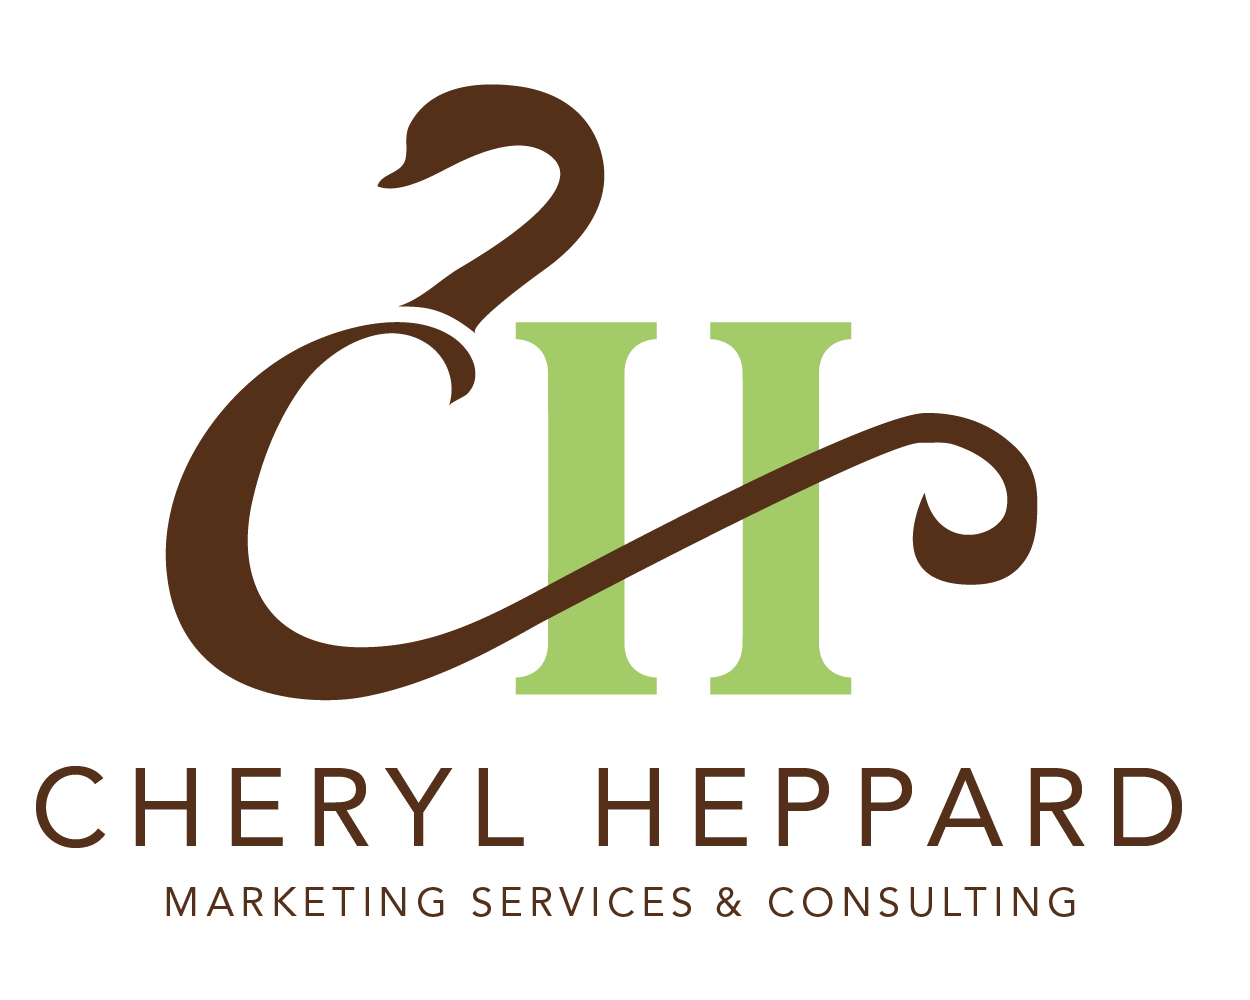 CherylHeppard.com